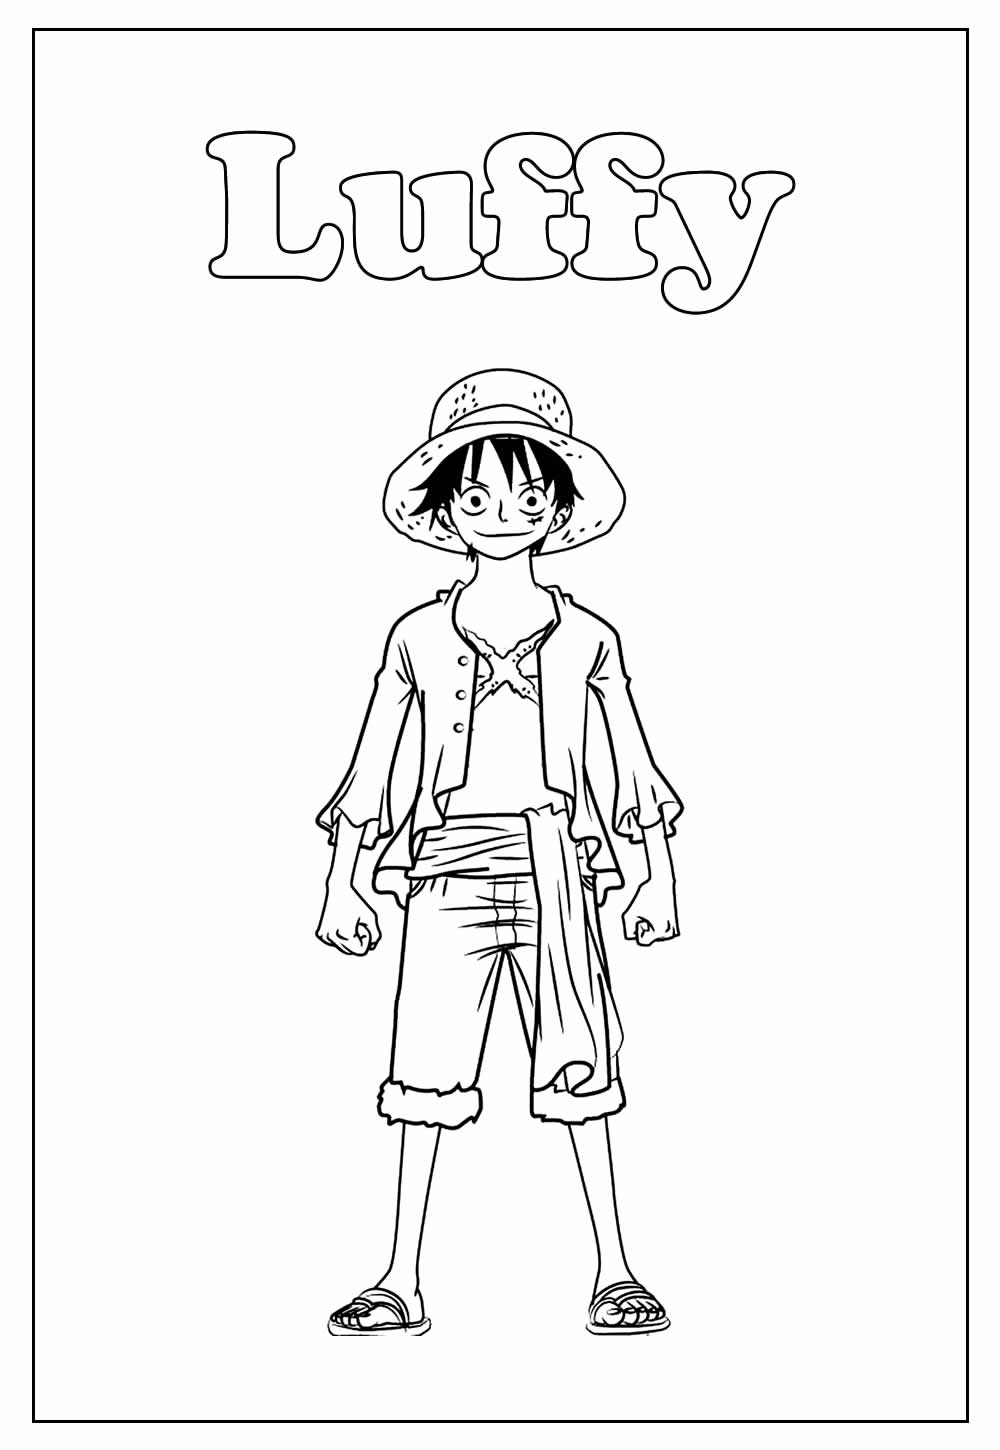 37+ Desenhos de Luffy para Imprimir e Colorir/Pintar